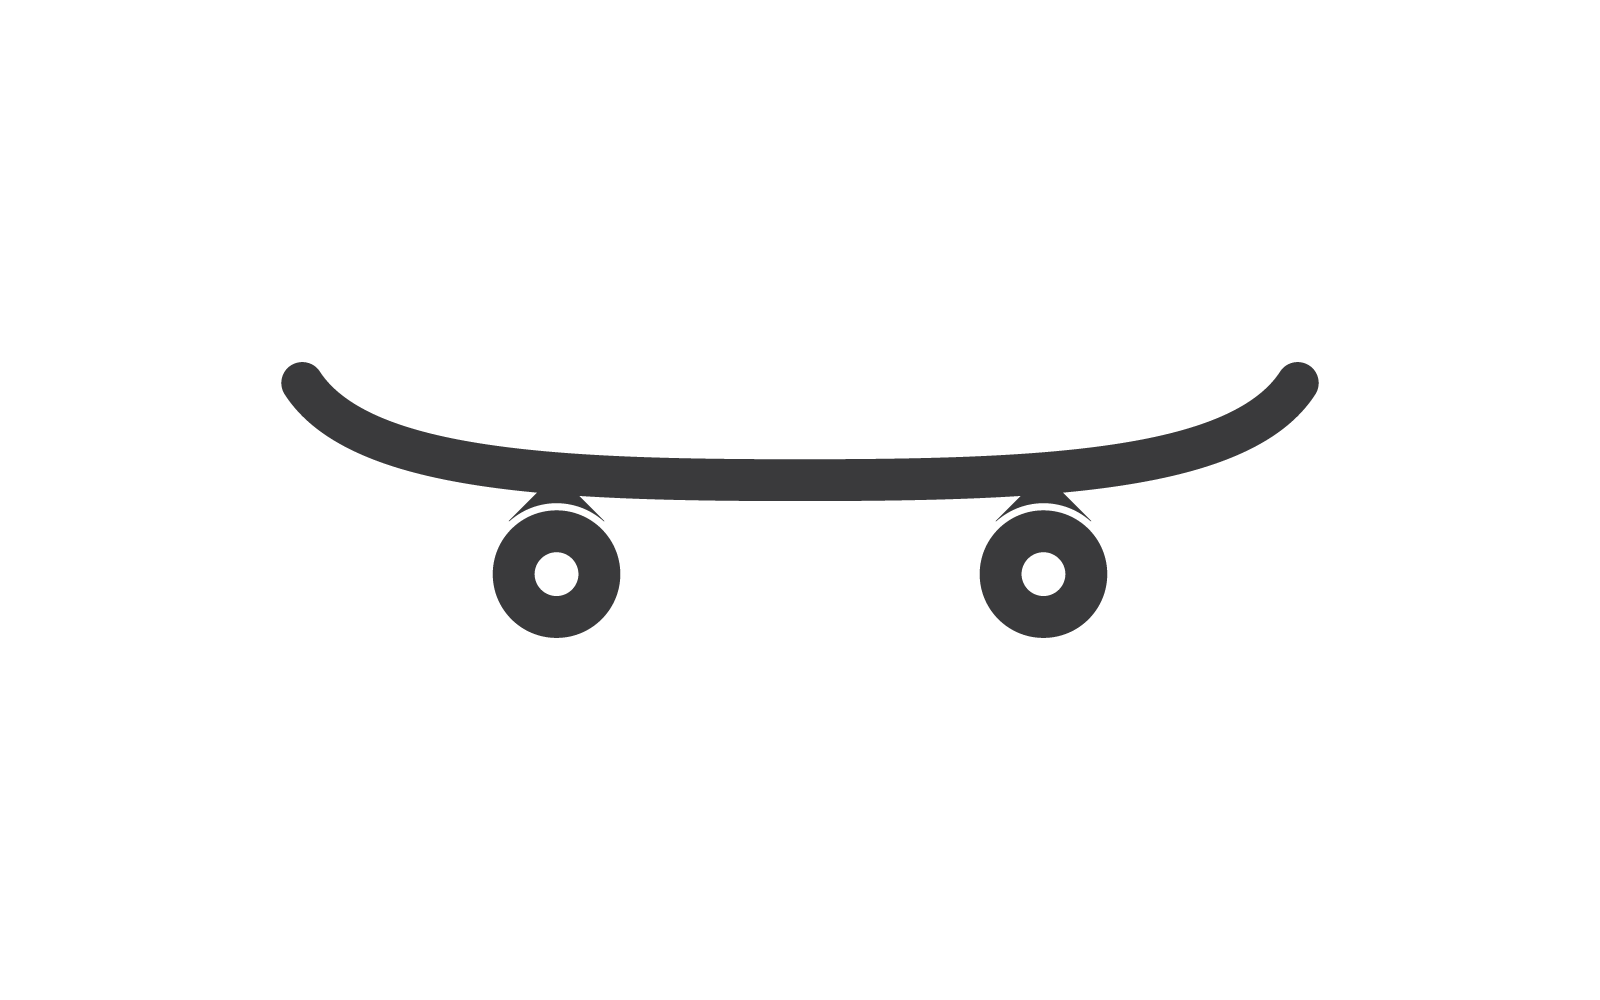 Skateboard logo icon isolated on white background